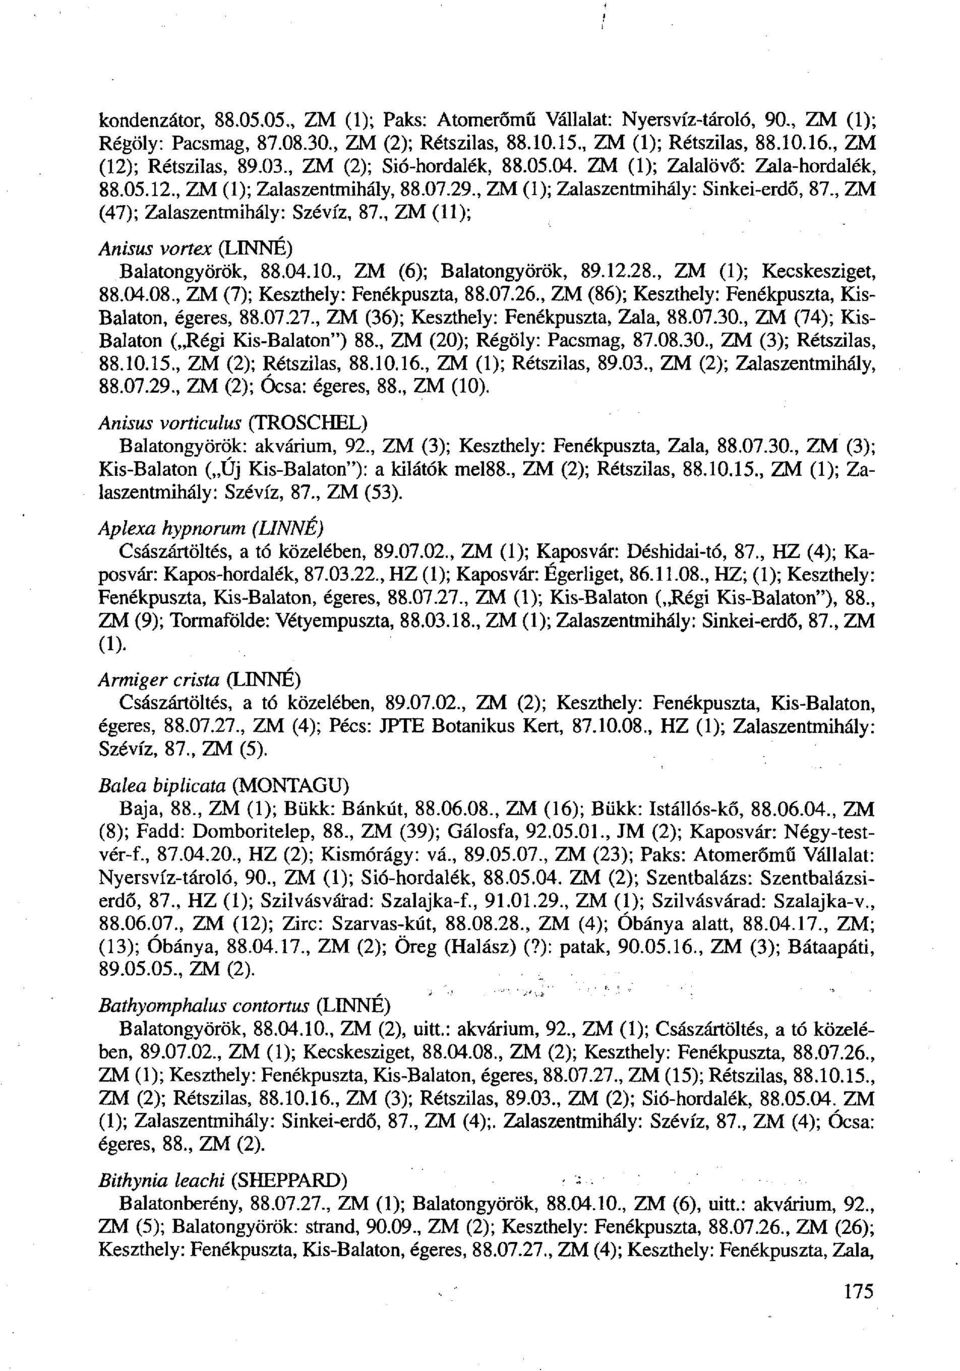 , ZM (11); Anisus vortex (LINNE) Balatongyörök, 88.04.10., ZM (6); Balatongyörök, 89.12.28., ZM (1); Kecskesziget, 88.04.08., ZM (7); Keszthely: Fenékpuszta, 88.07.26.